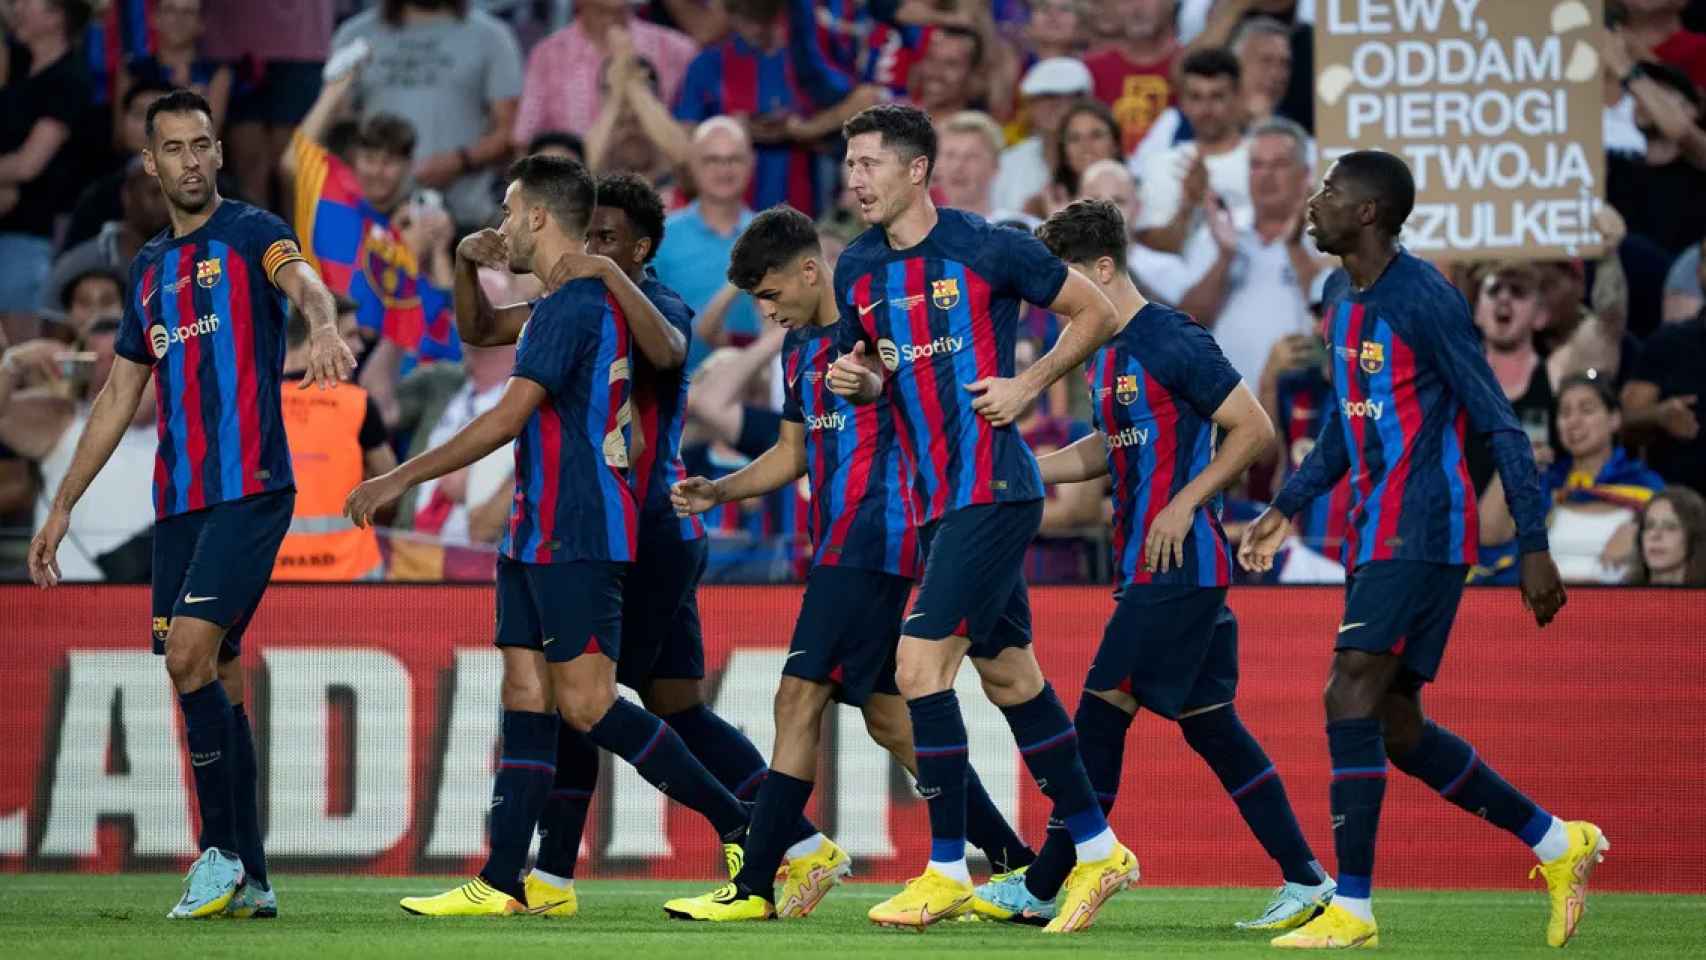 Los jugadores del Barça, celebrando un gol, durante la disputa del Trofeo Joan Gamper / FCB